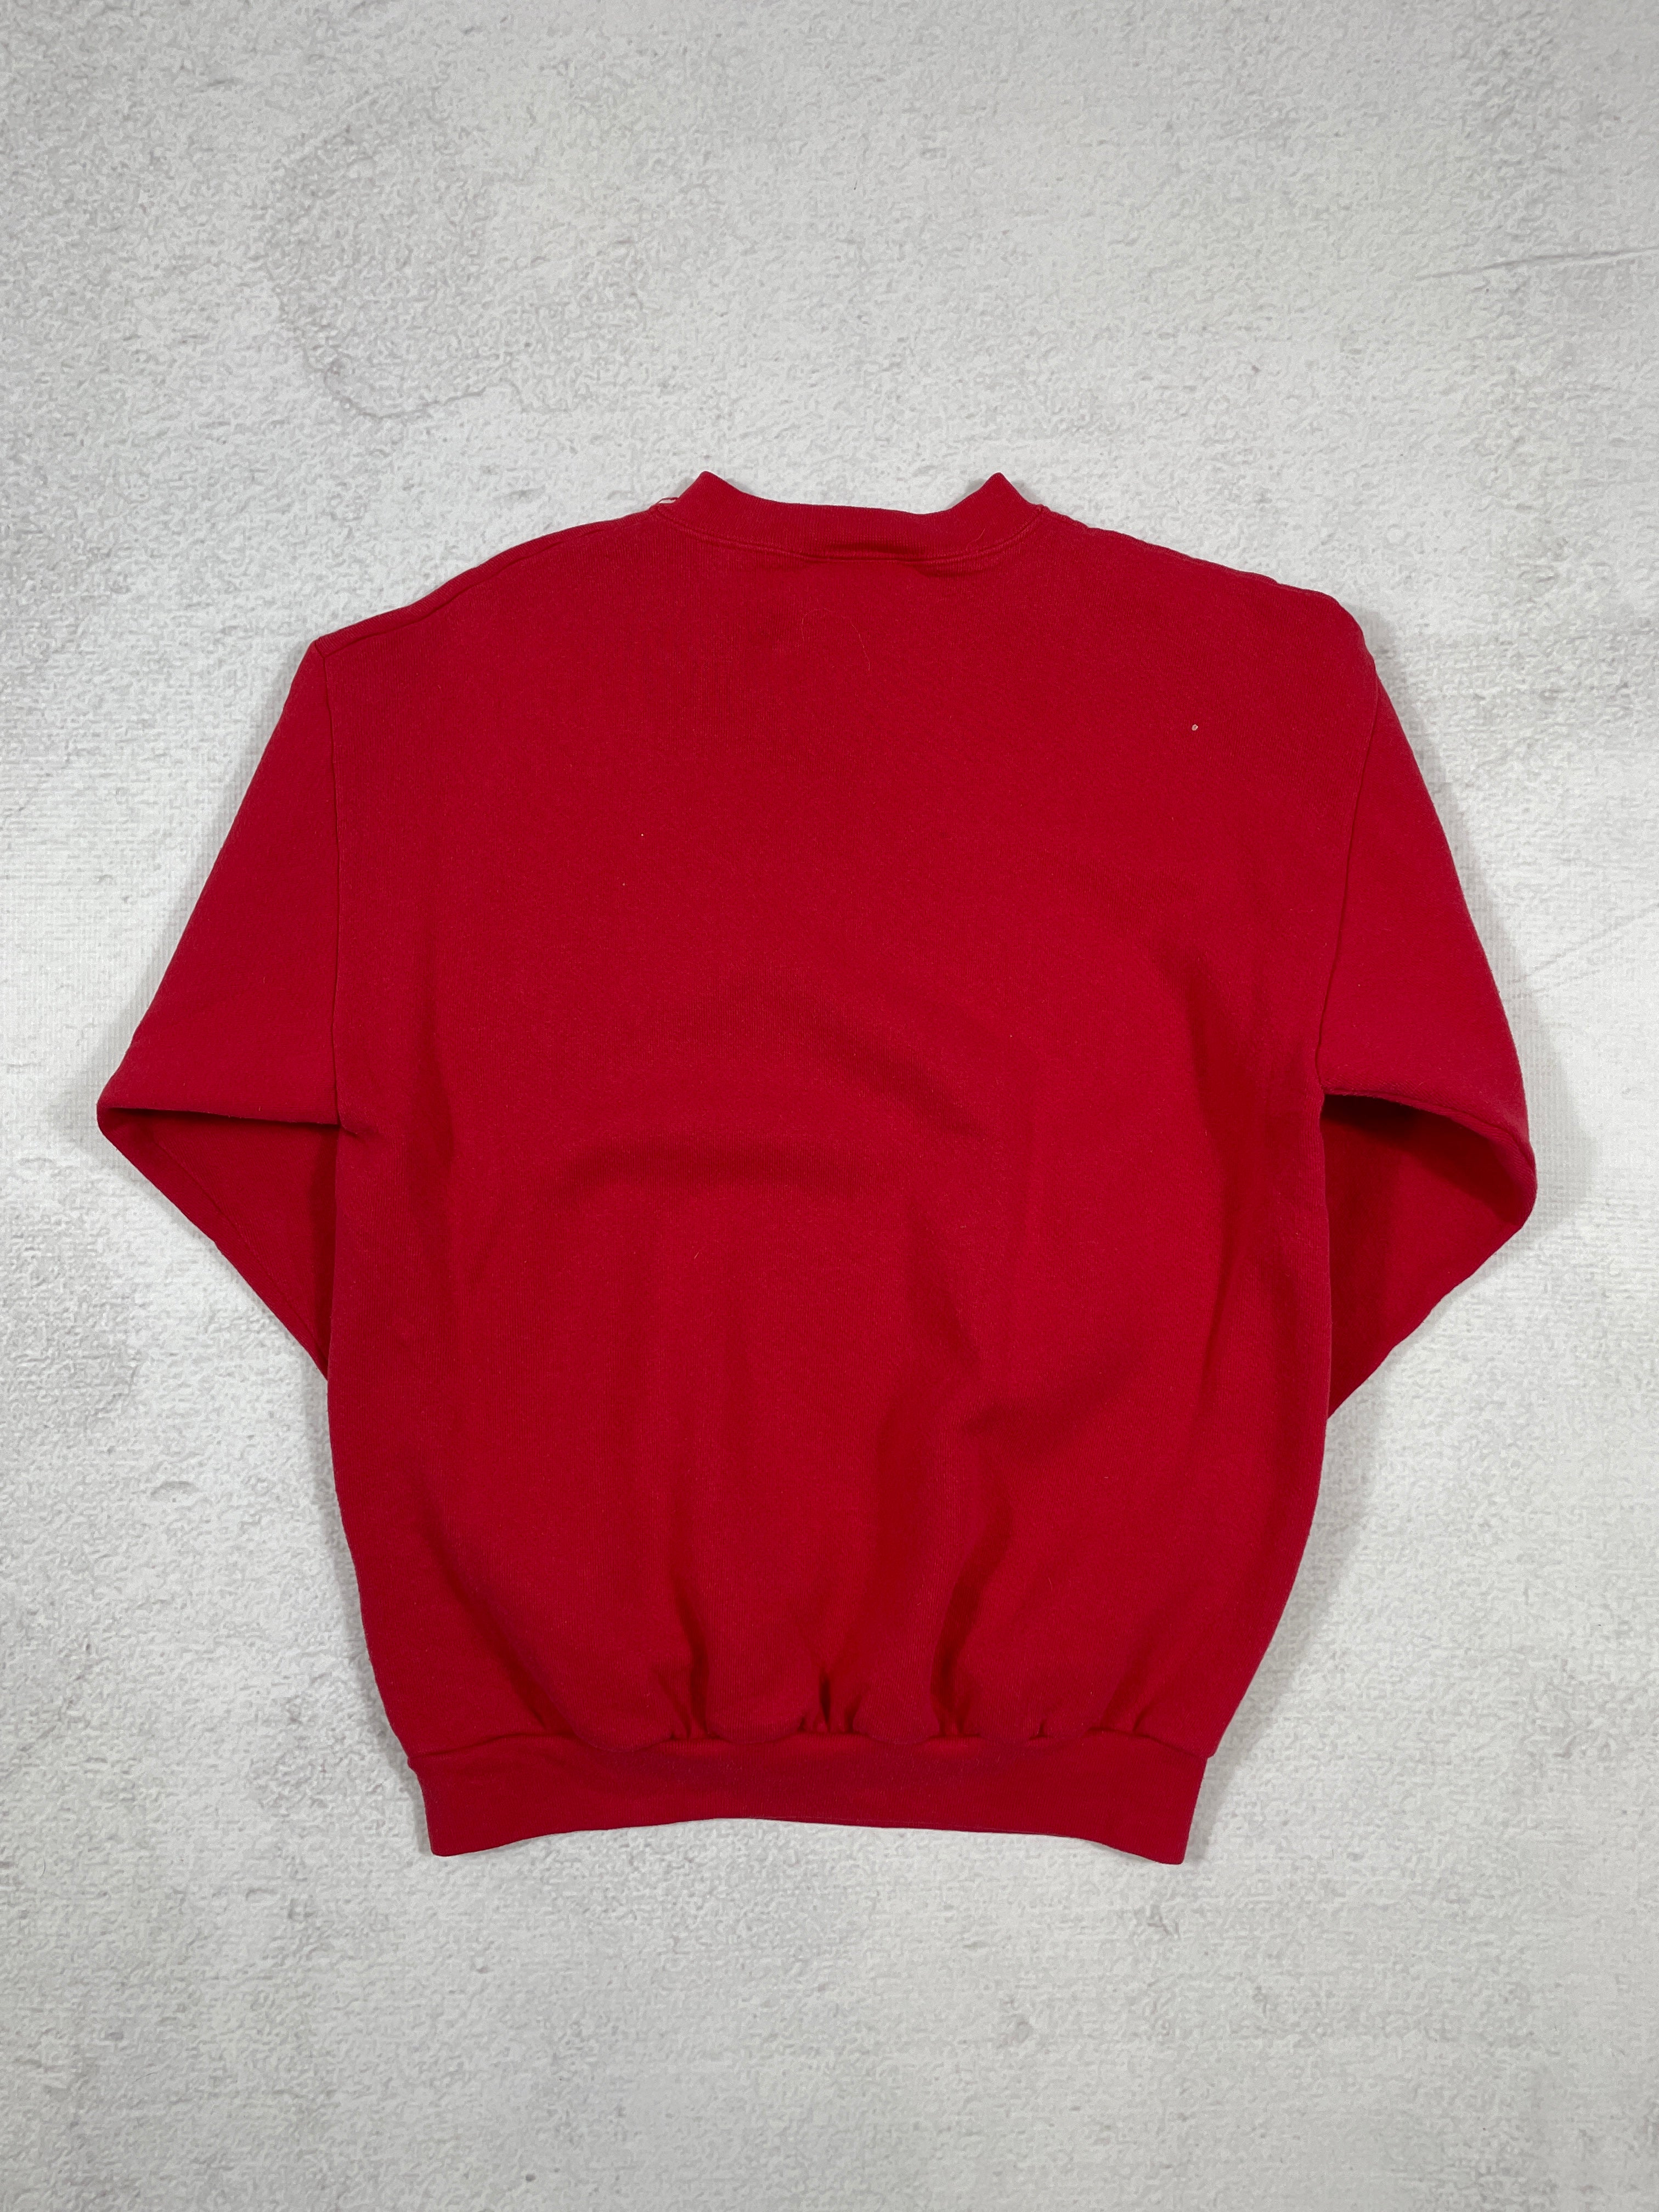 Vintage NHL Detroit Red Wings Crewneck Sweatshirt - Medium